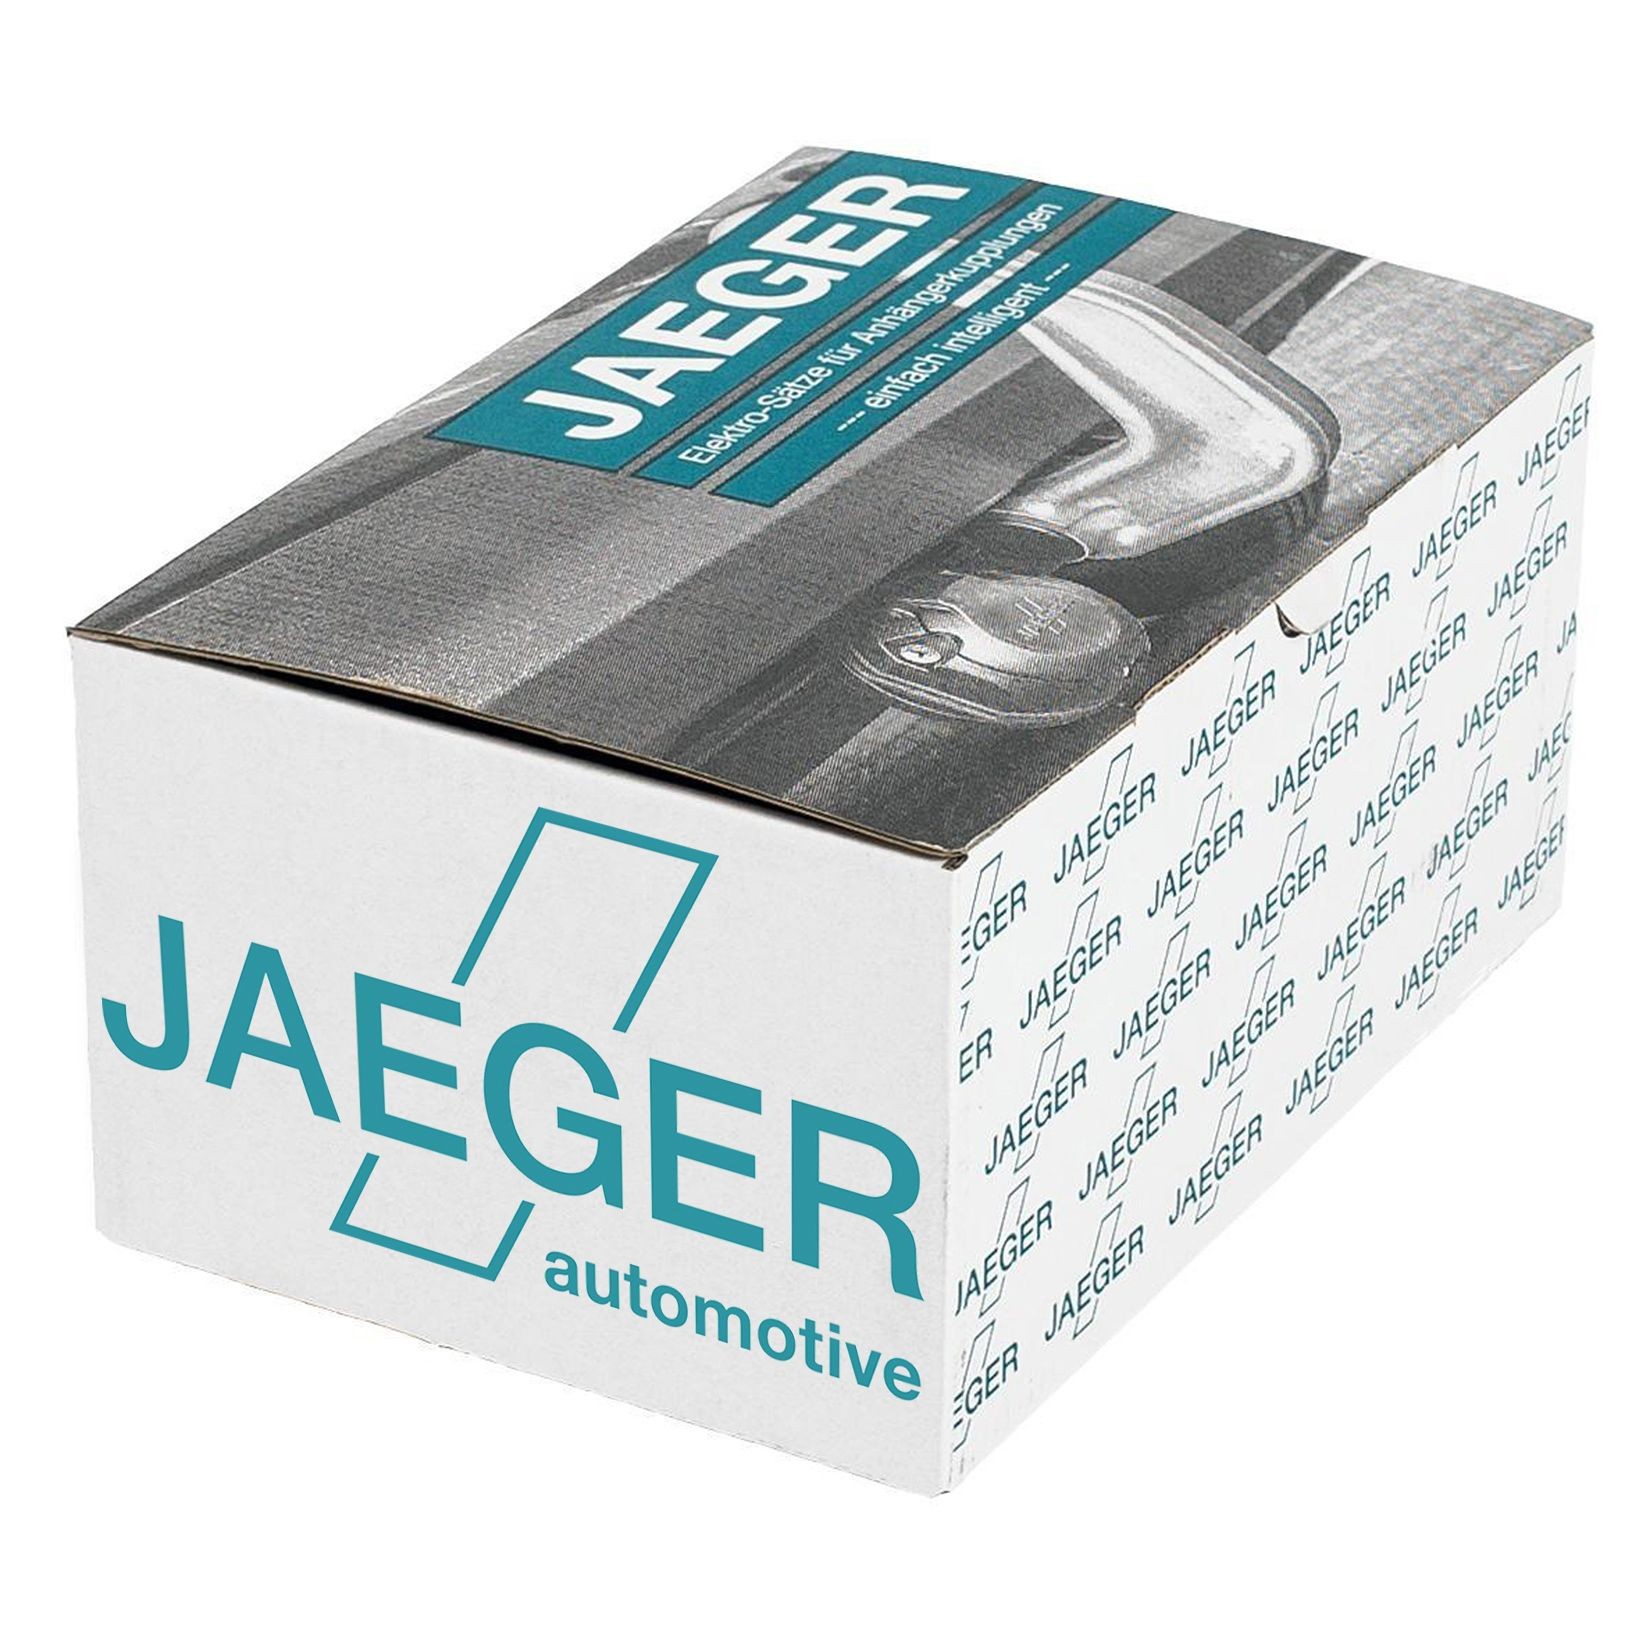 BMW X3 Towbar / parts parts - Towbar electric kit JAEGER 21020151